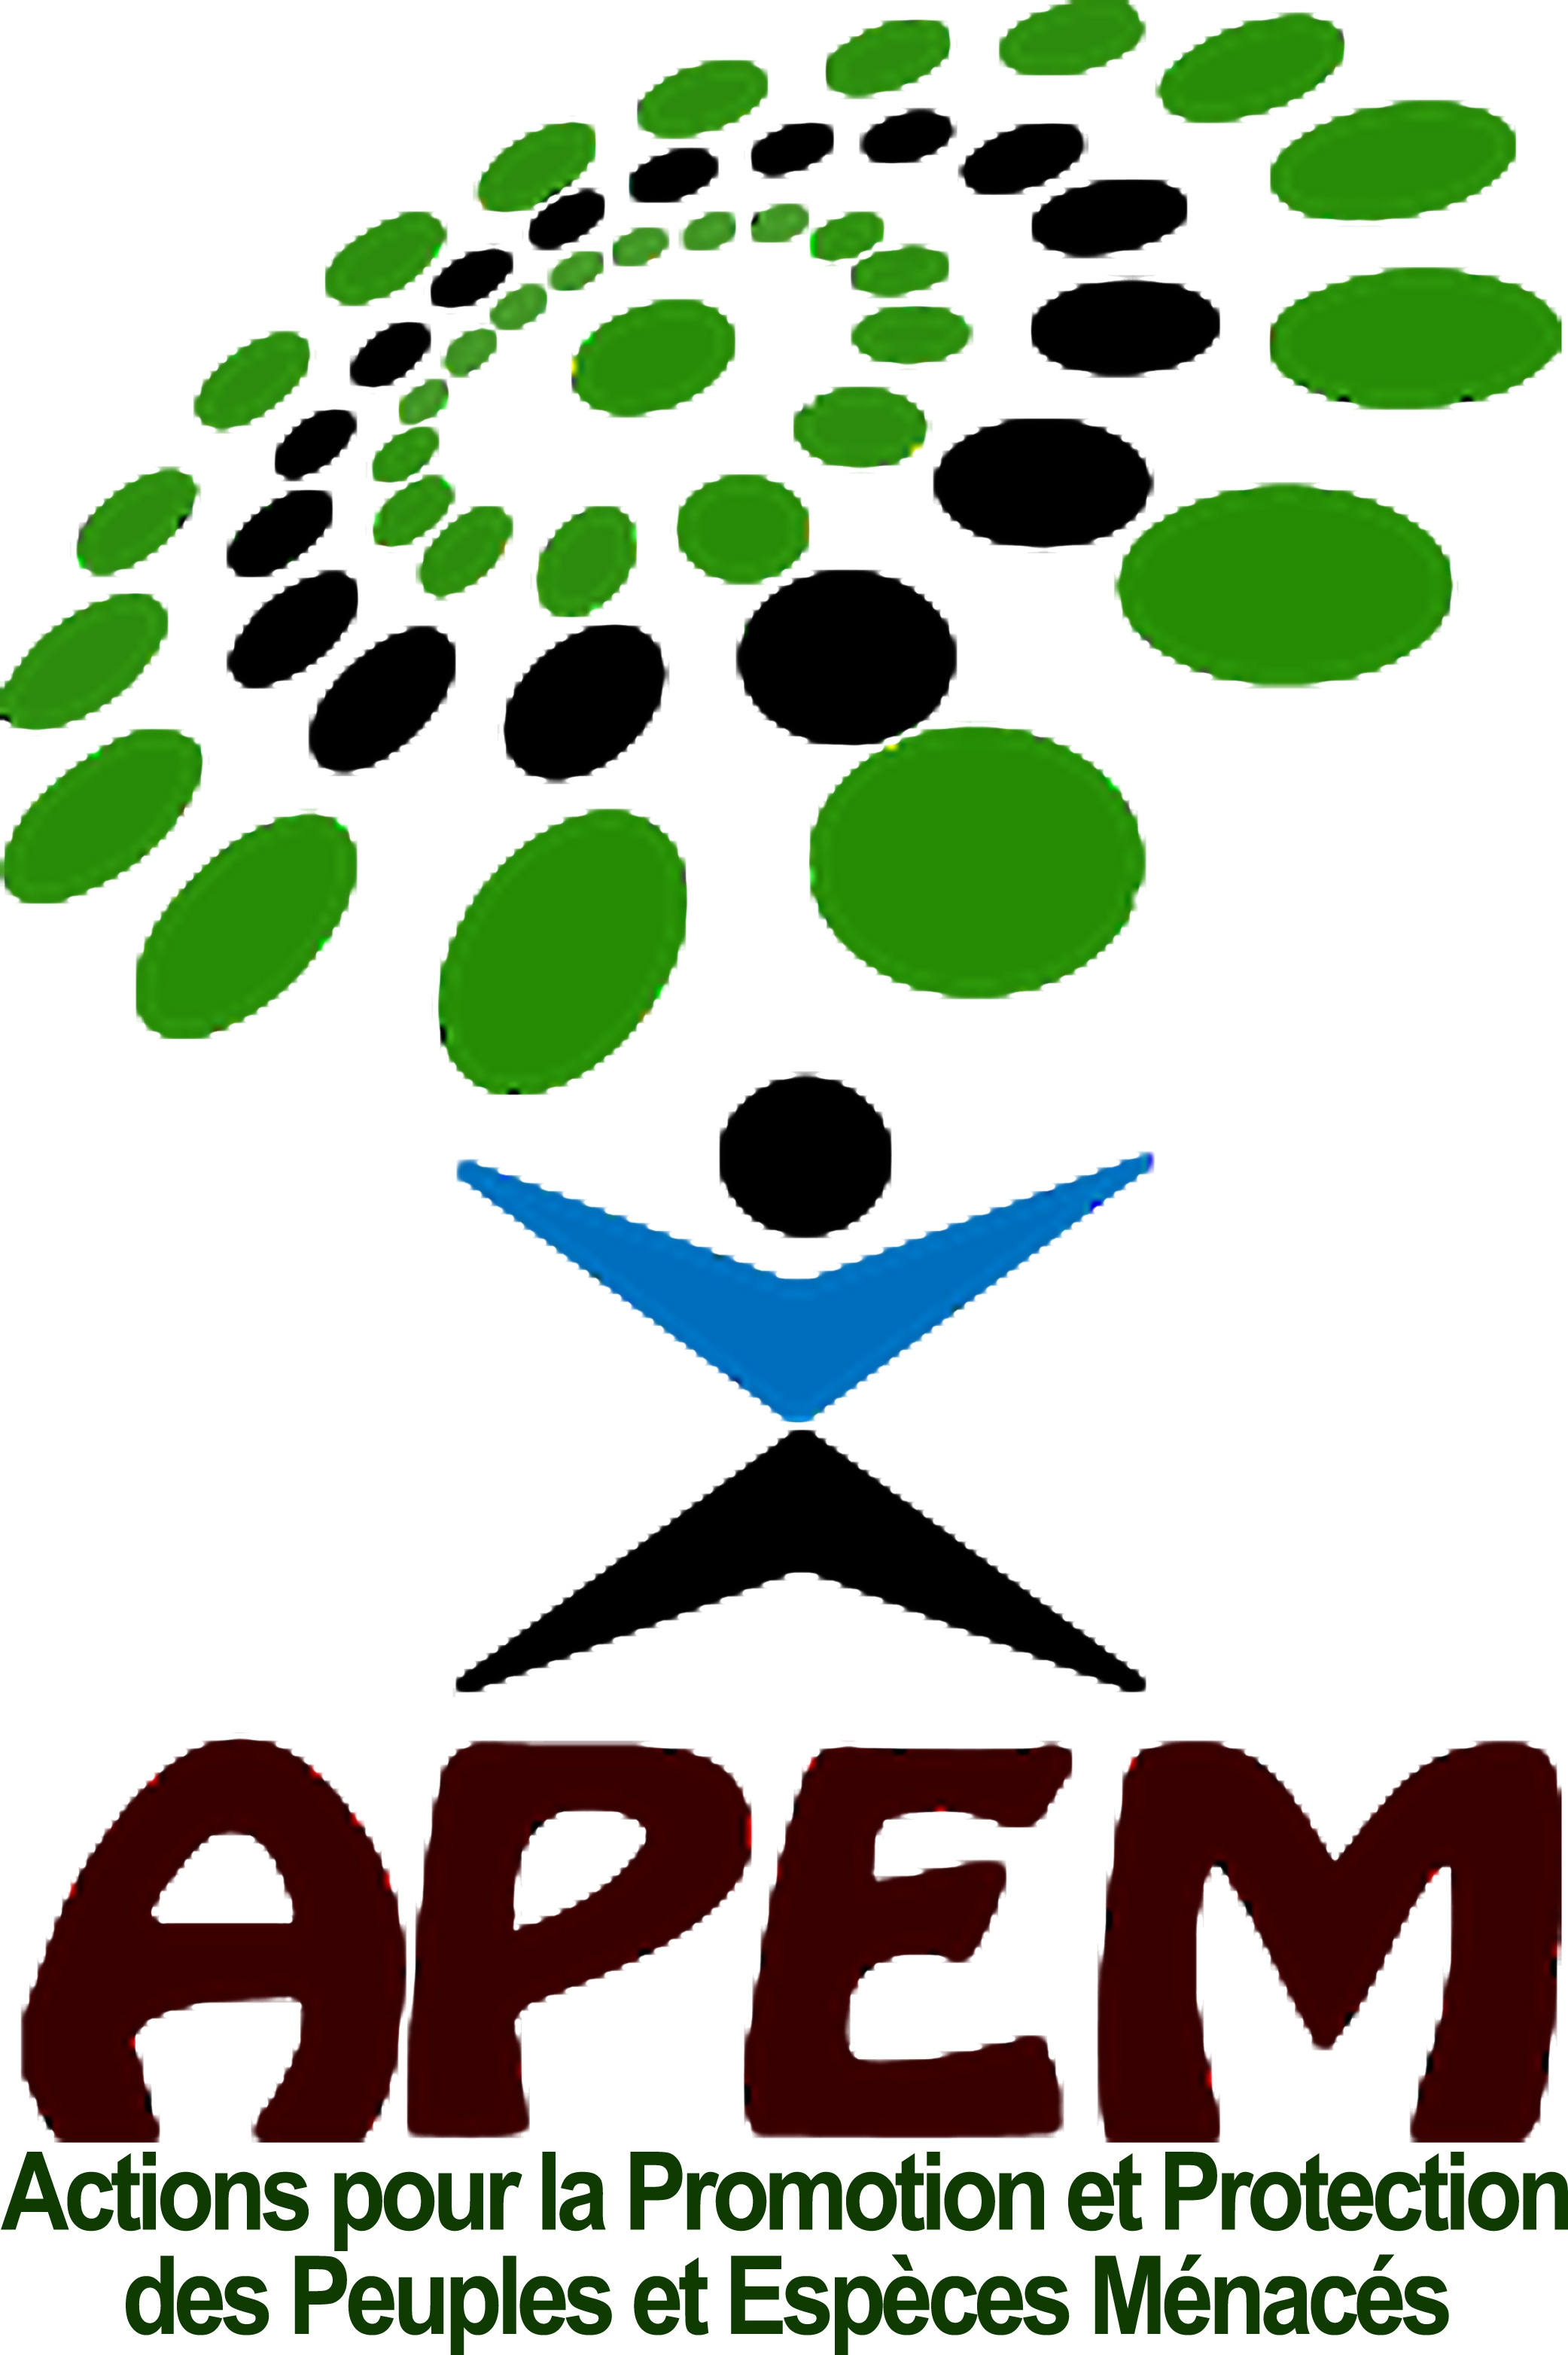 Actions pour la Promotion et Protection des Peuples et Espèces Menacés (APEM)